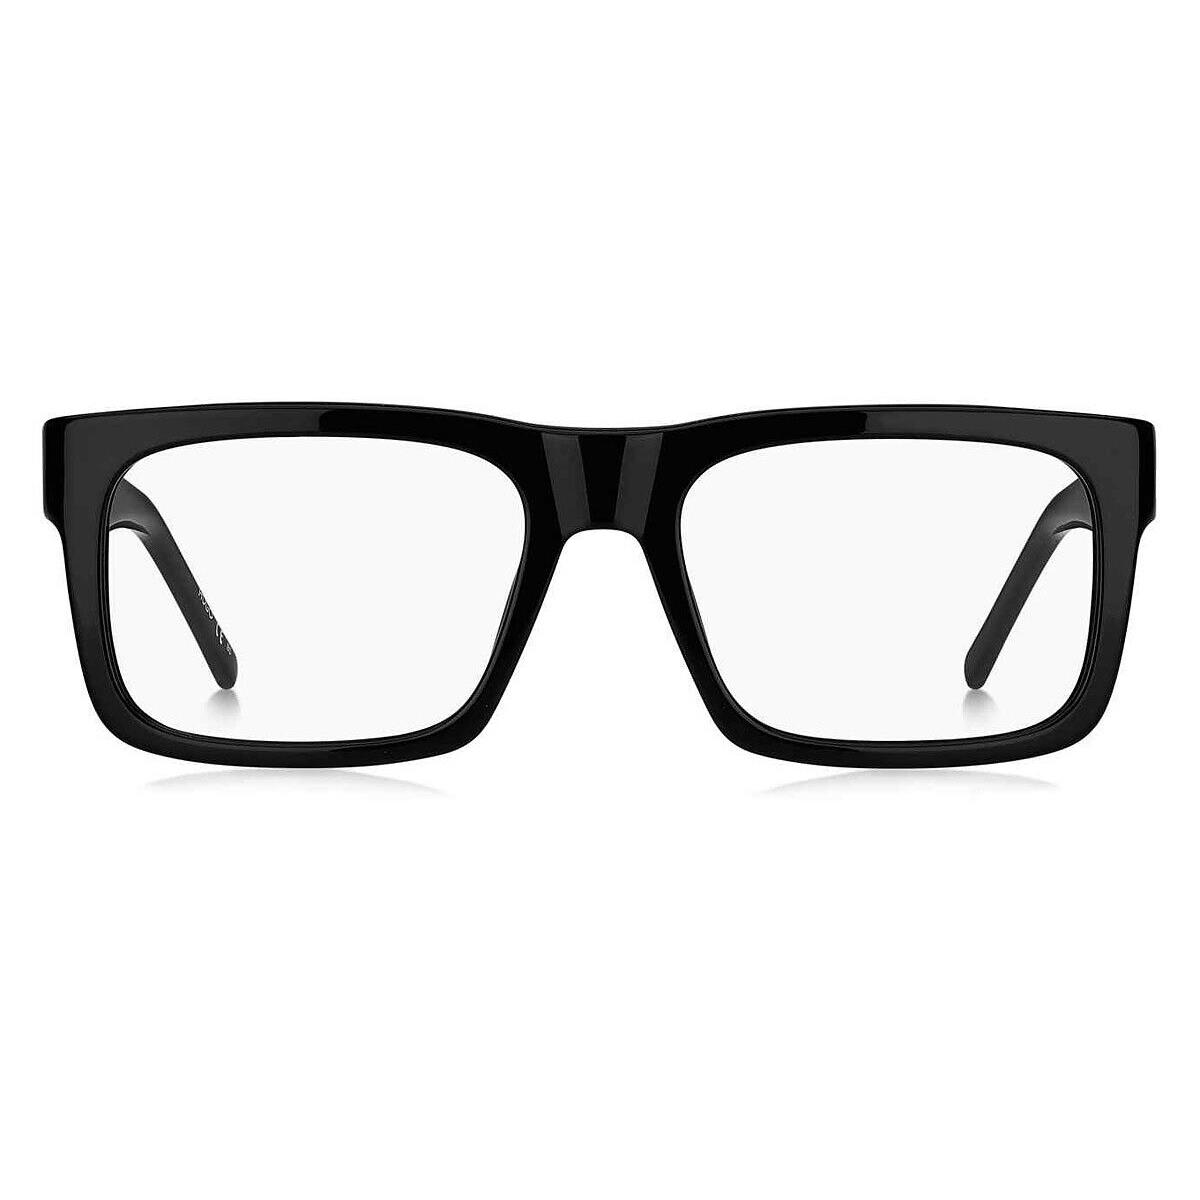 Hugo Boss HG 1257 Eyeglasses Men Black Rectangle 54mm